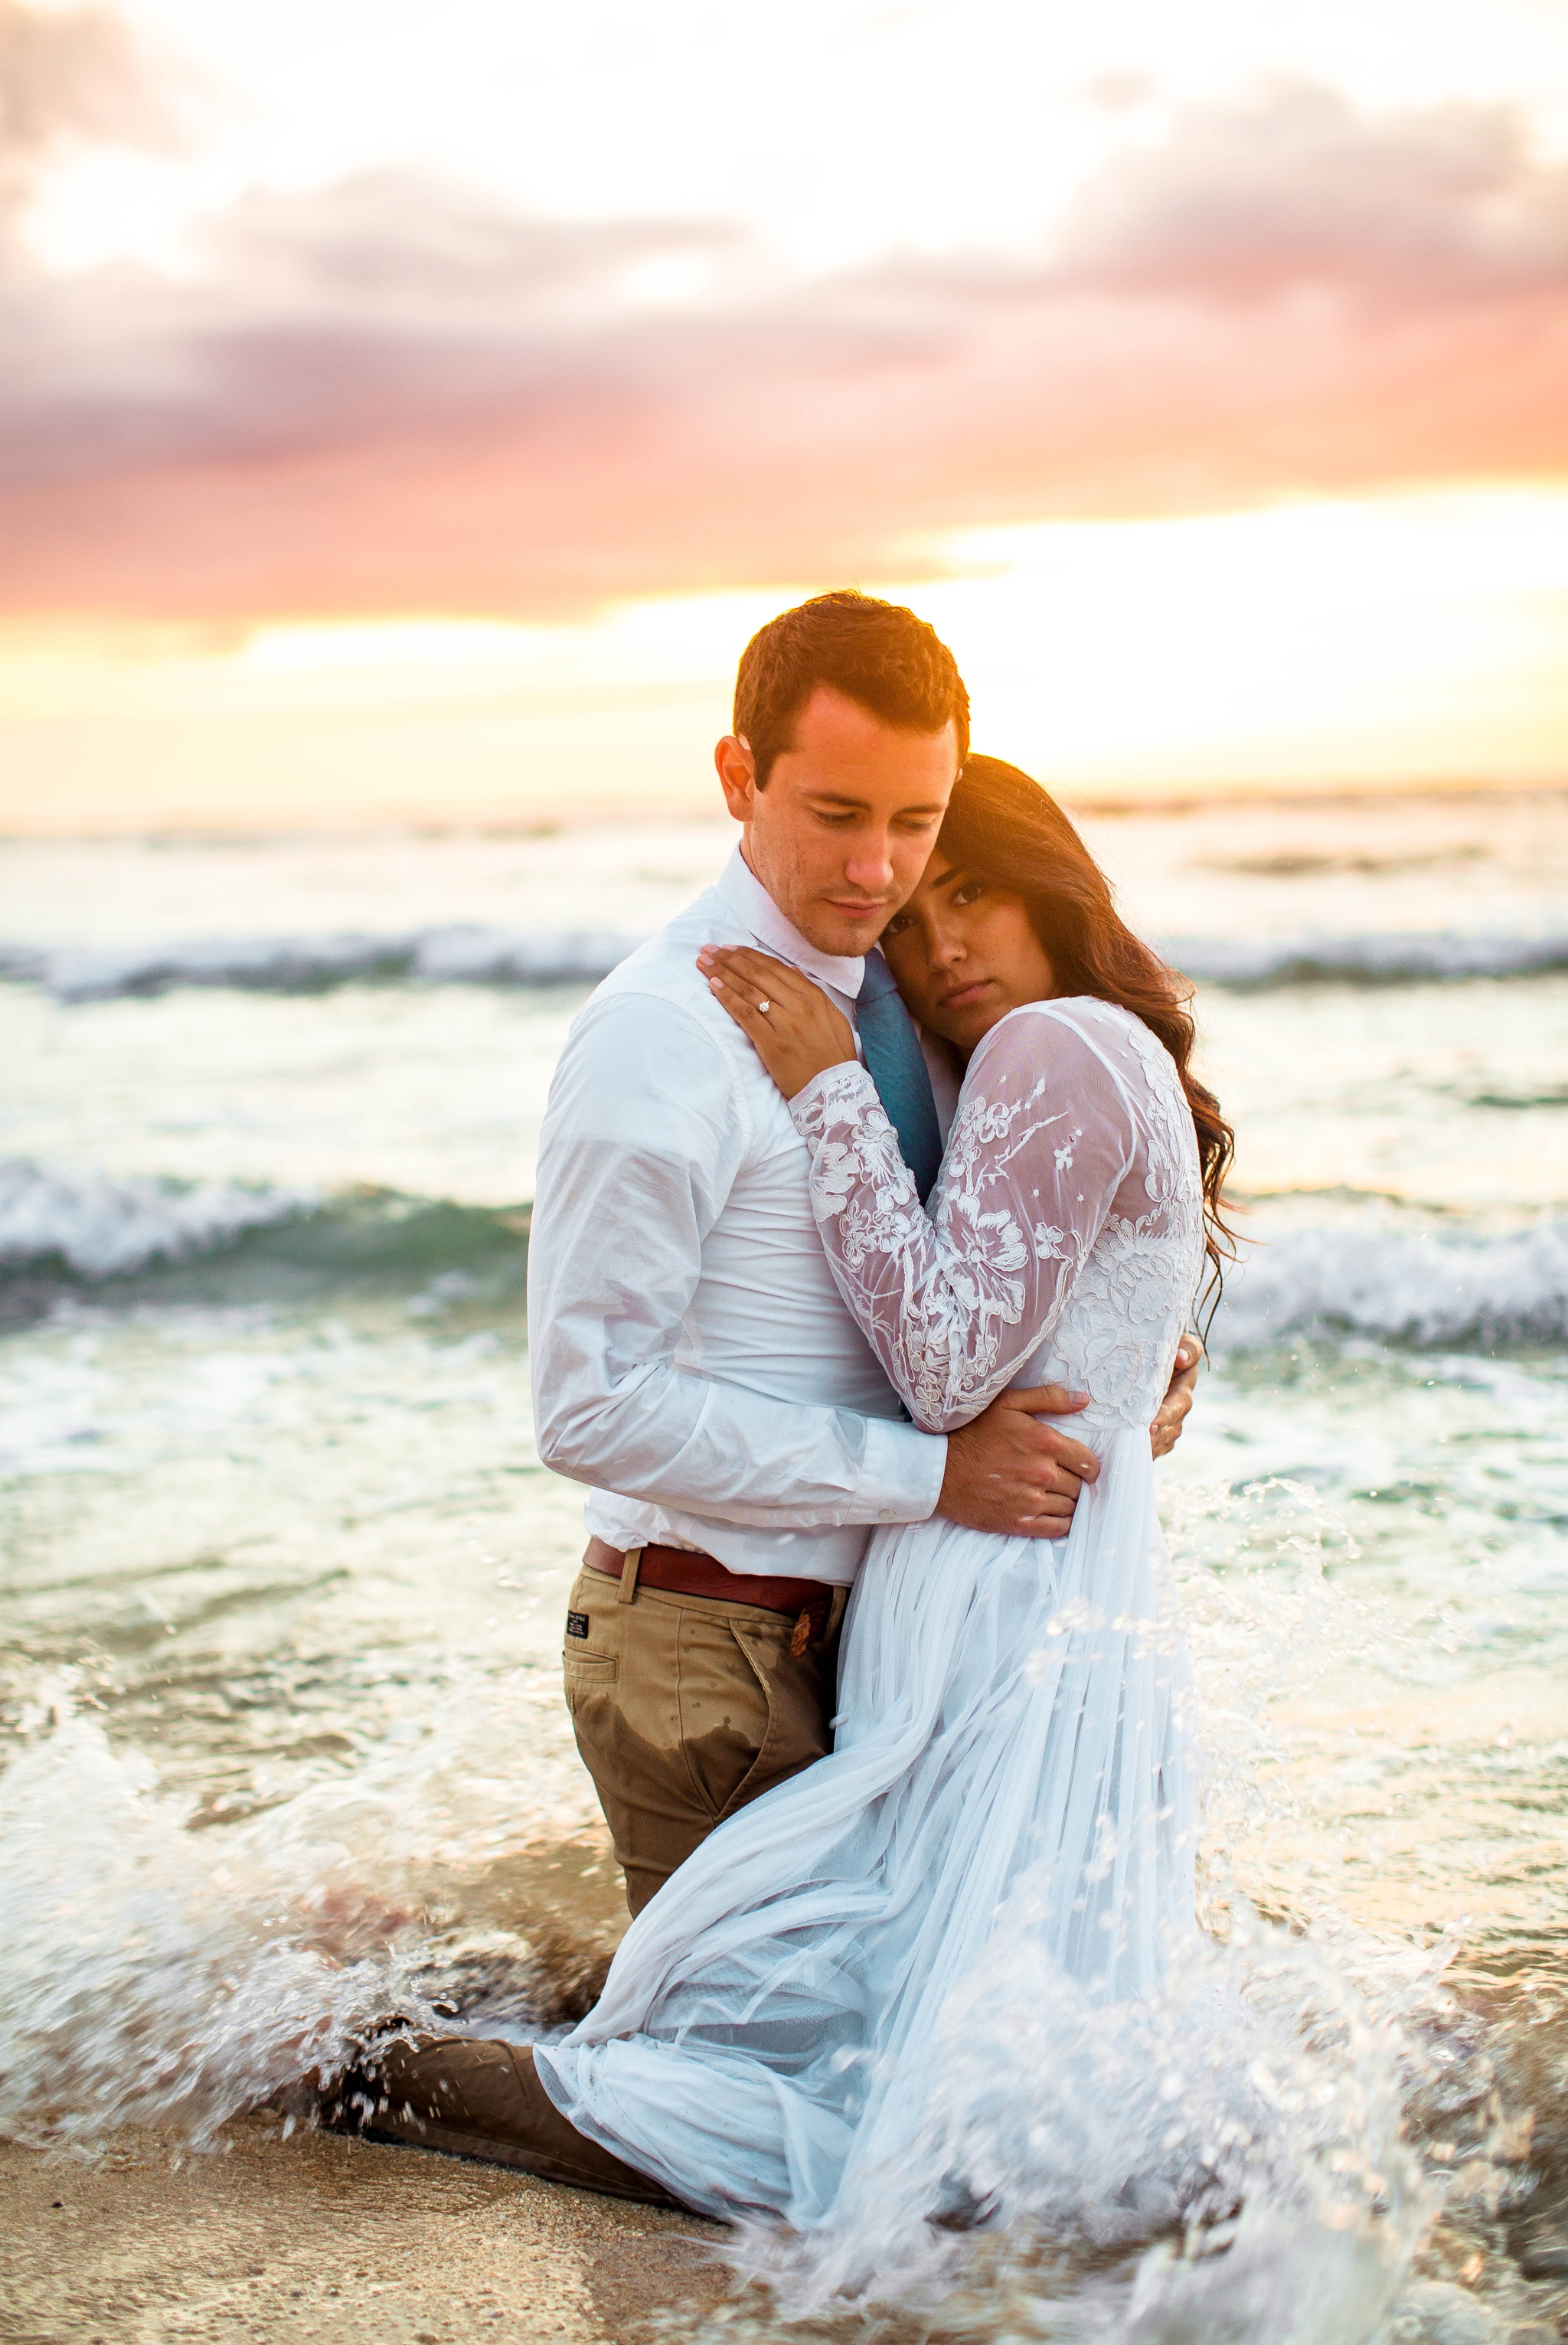  Bride and Groom in the ocean - Wedding Portraits at Sunset in Hawaii - Ana + Elijah - Wedding at Loulu Palm in Haleiwa, HI - Oahu Hawaii Wedding Photographer - #hawaiiweddingphotographer #oahuweddings #hawaiiweddings 